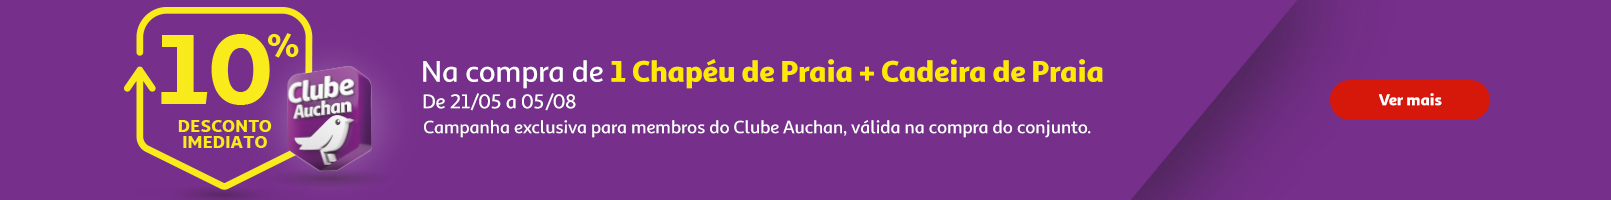 Campanha Clube Auchan Chapéu de Praia + Cadeira || 21/05 a 05/08 | Auchan